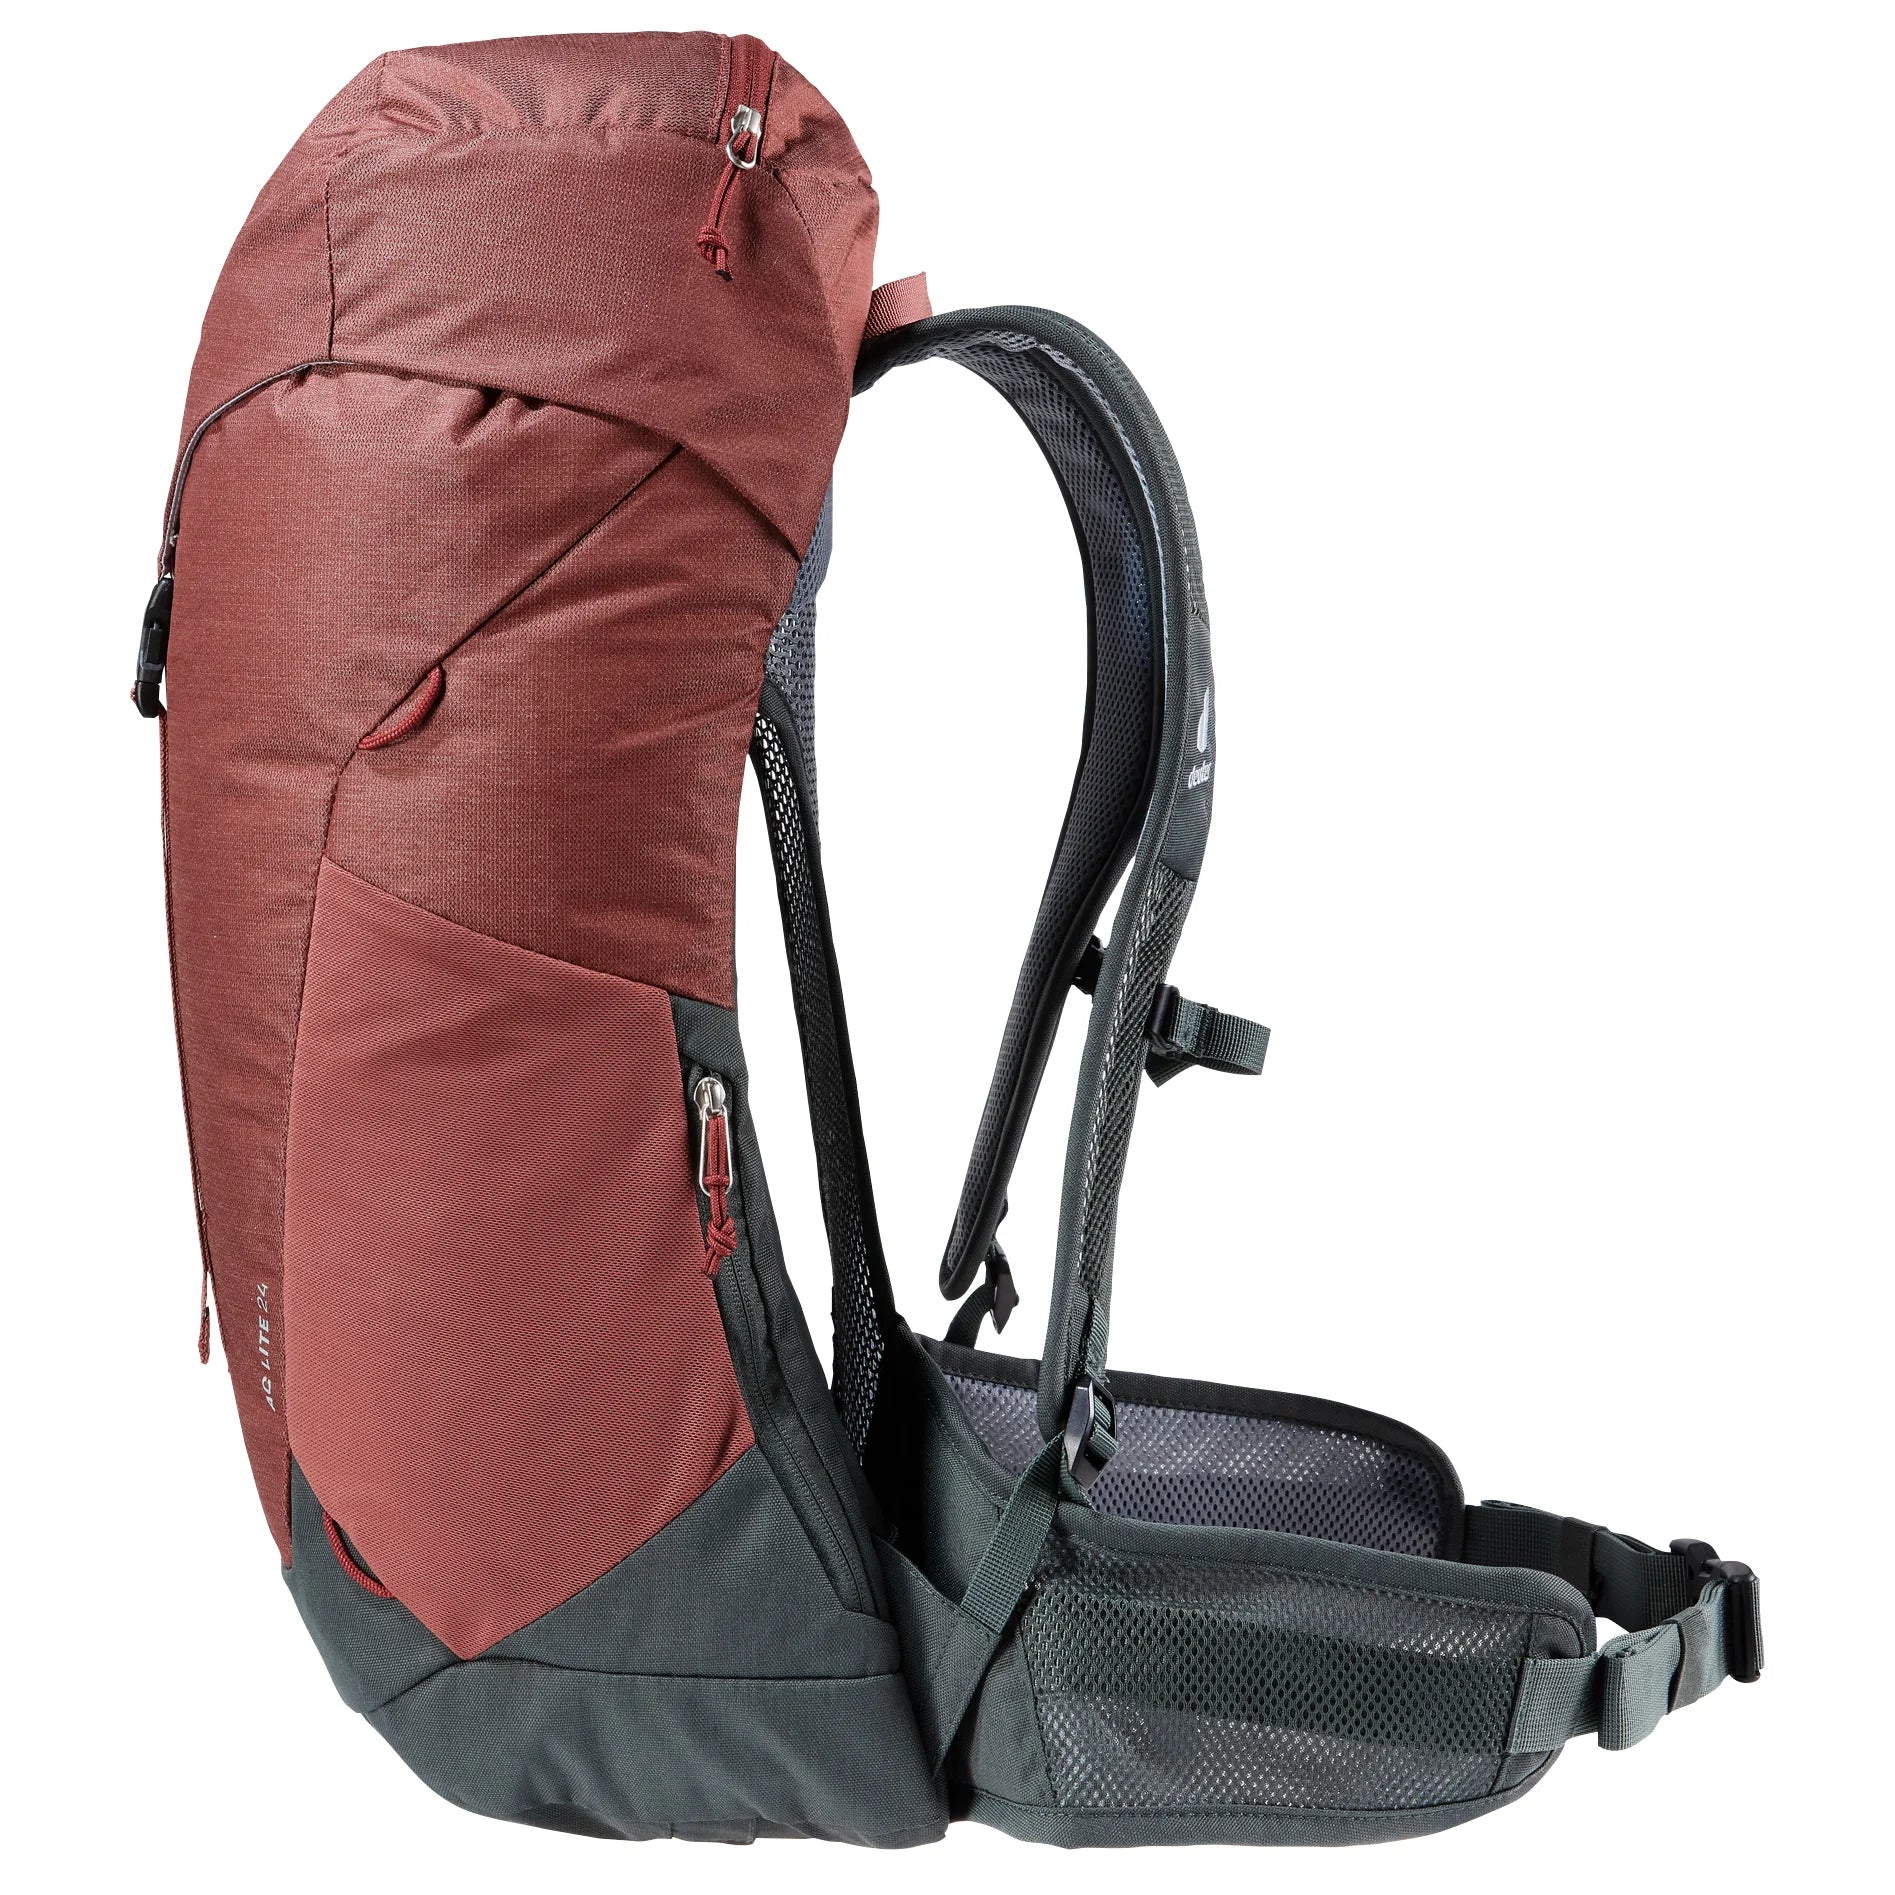 Deuter Travel AC Lite 24 sac à dos de randonnée 56 cm - Alpinegreen-Arctic